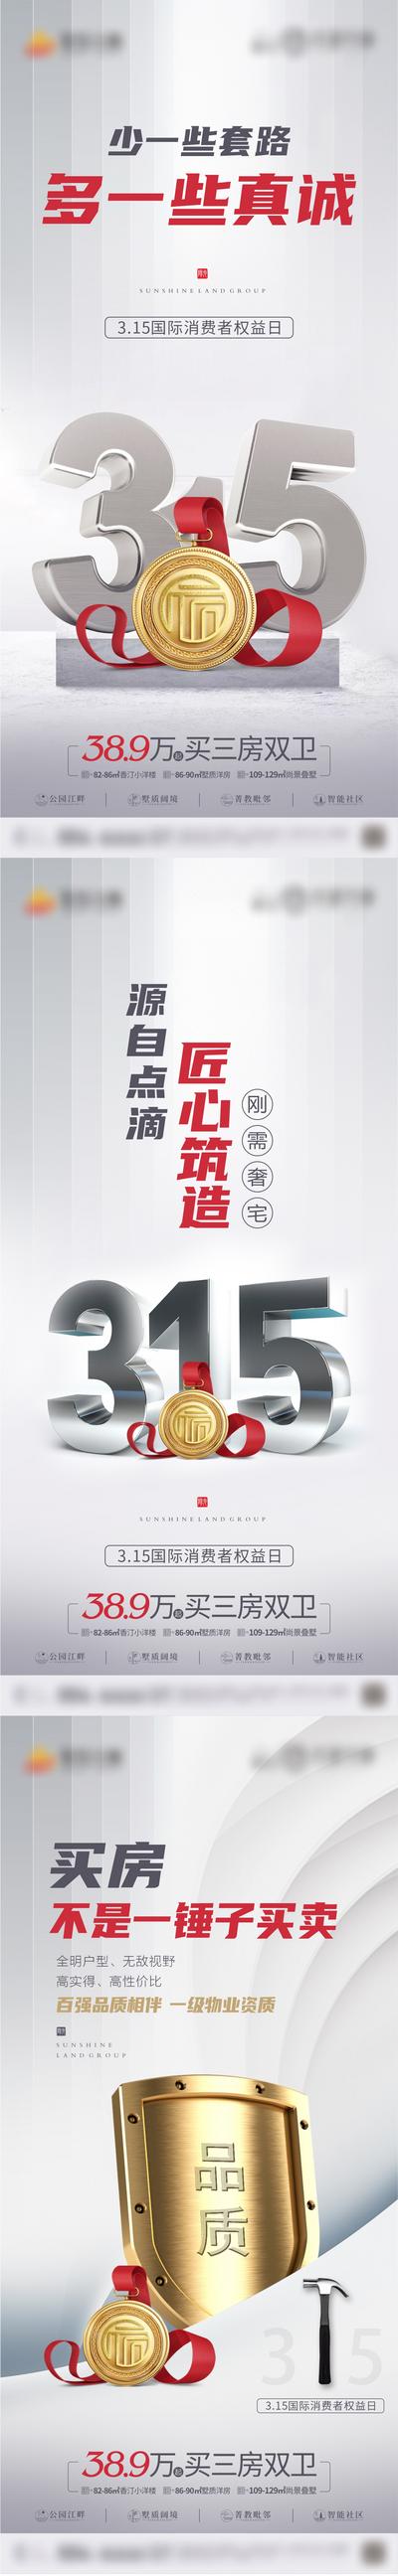 南门网 广告 海报 节日 315 消费者 维权 系列